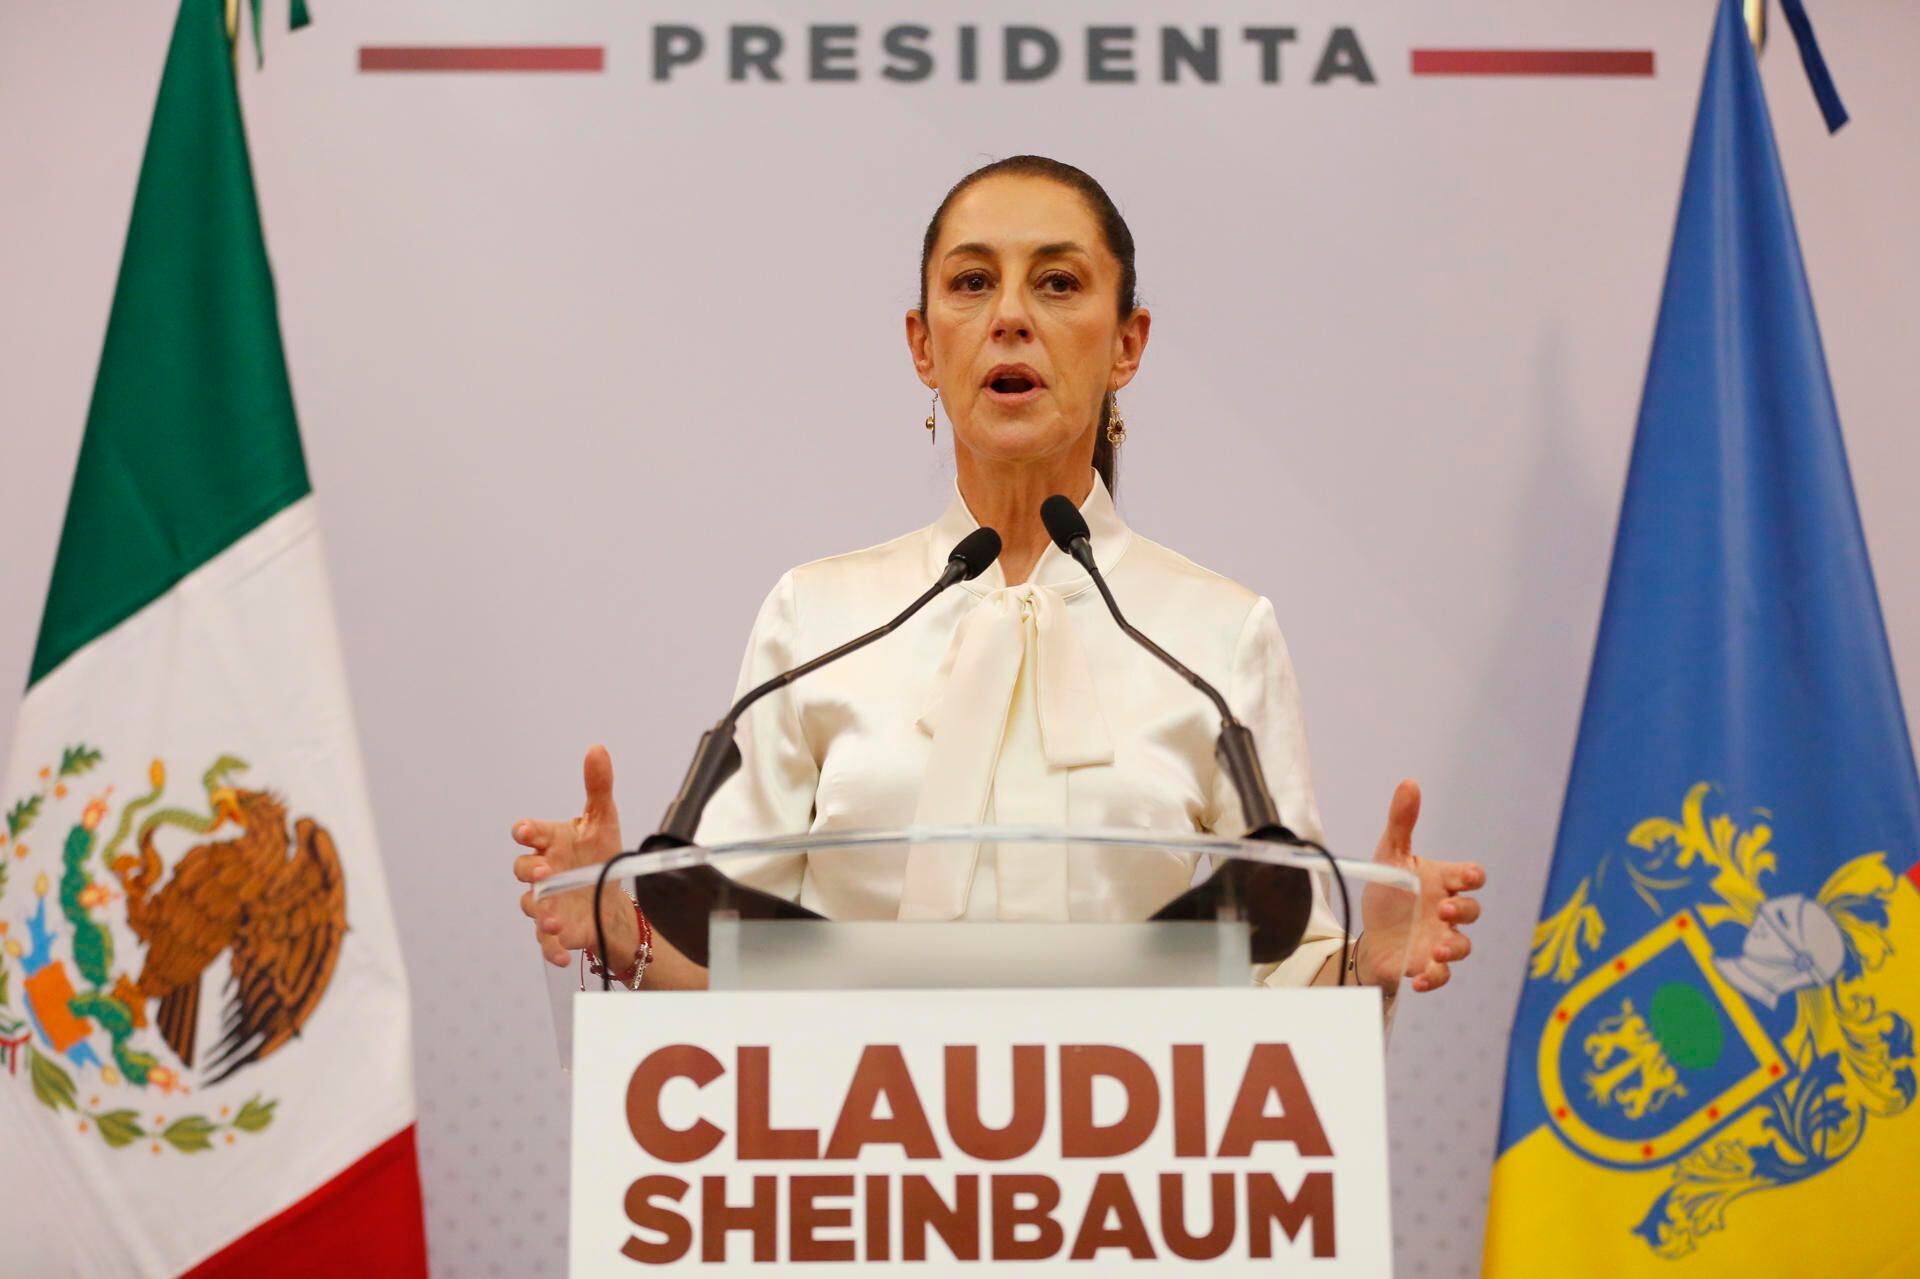 Claudia Sheinbaum se encuentra en su gira por la campaña presidencial.